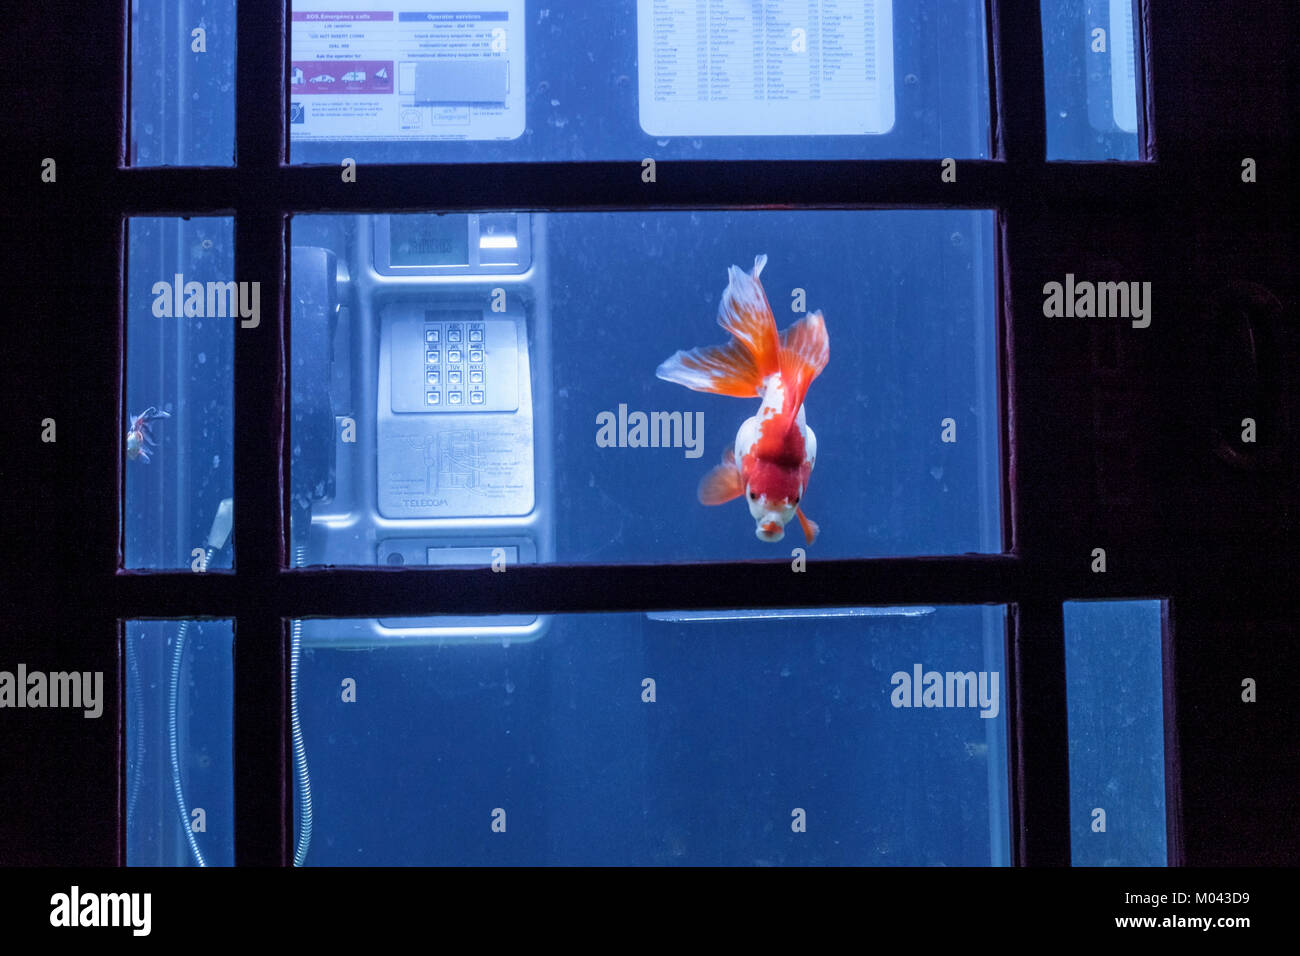 London, Großbritannien. 18. Januar 2018. Das Lumiere London Light Festival kehrt zum zweiten Mal zurück. Mehr als fünfzig Kunstwerke verwandeln die Straßen der Hauptstadt in eine schillernde, nächtliche, kostenlose Kunstausstellung. Über eine Million Besucher besuchten die vier Festivaltage im Jahr 2016. Lumiere London läuft bis zum 21. Januar 2018. Im Bild: Benedetto Bufalino und Benoit Deseille verwandeln eine rote Telefondose in ein Aquarium voller exotischer Fische. Das französische Duo kreiert Aquarium und lädt uns ein, vom Reisen zu träumen und unserem Alltag zu entfliehen. Kredit: Mark phillips/Alamy Live Nachrichten Stockfoto